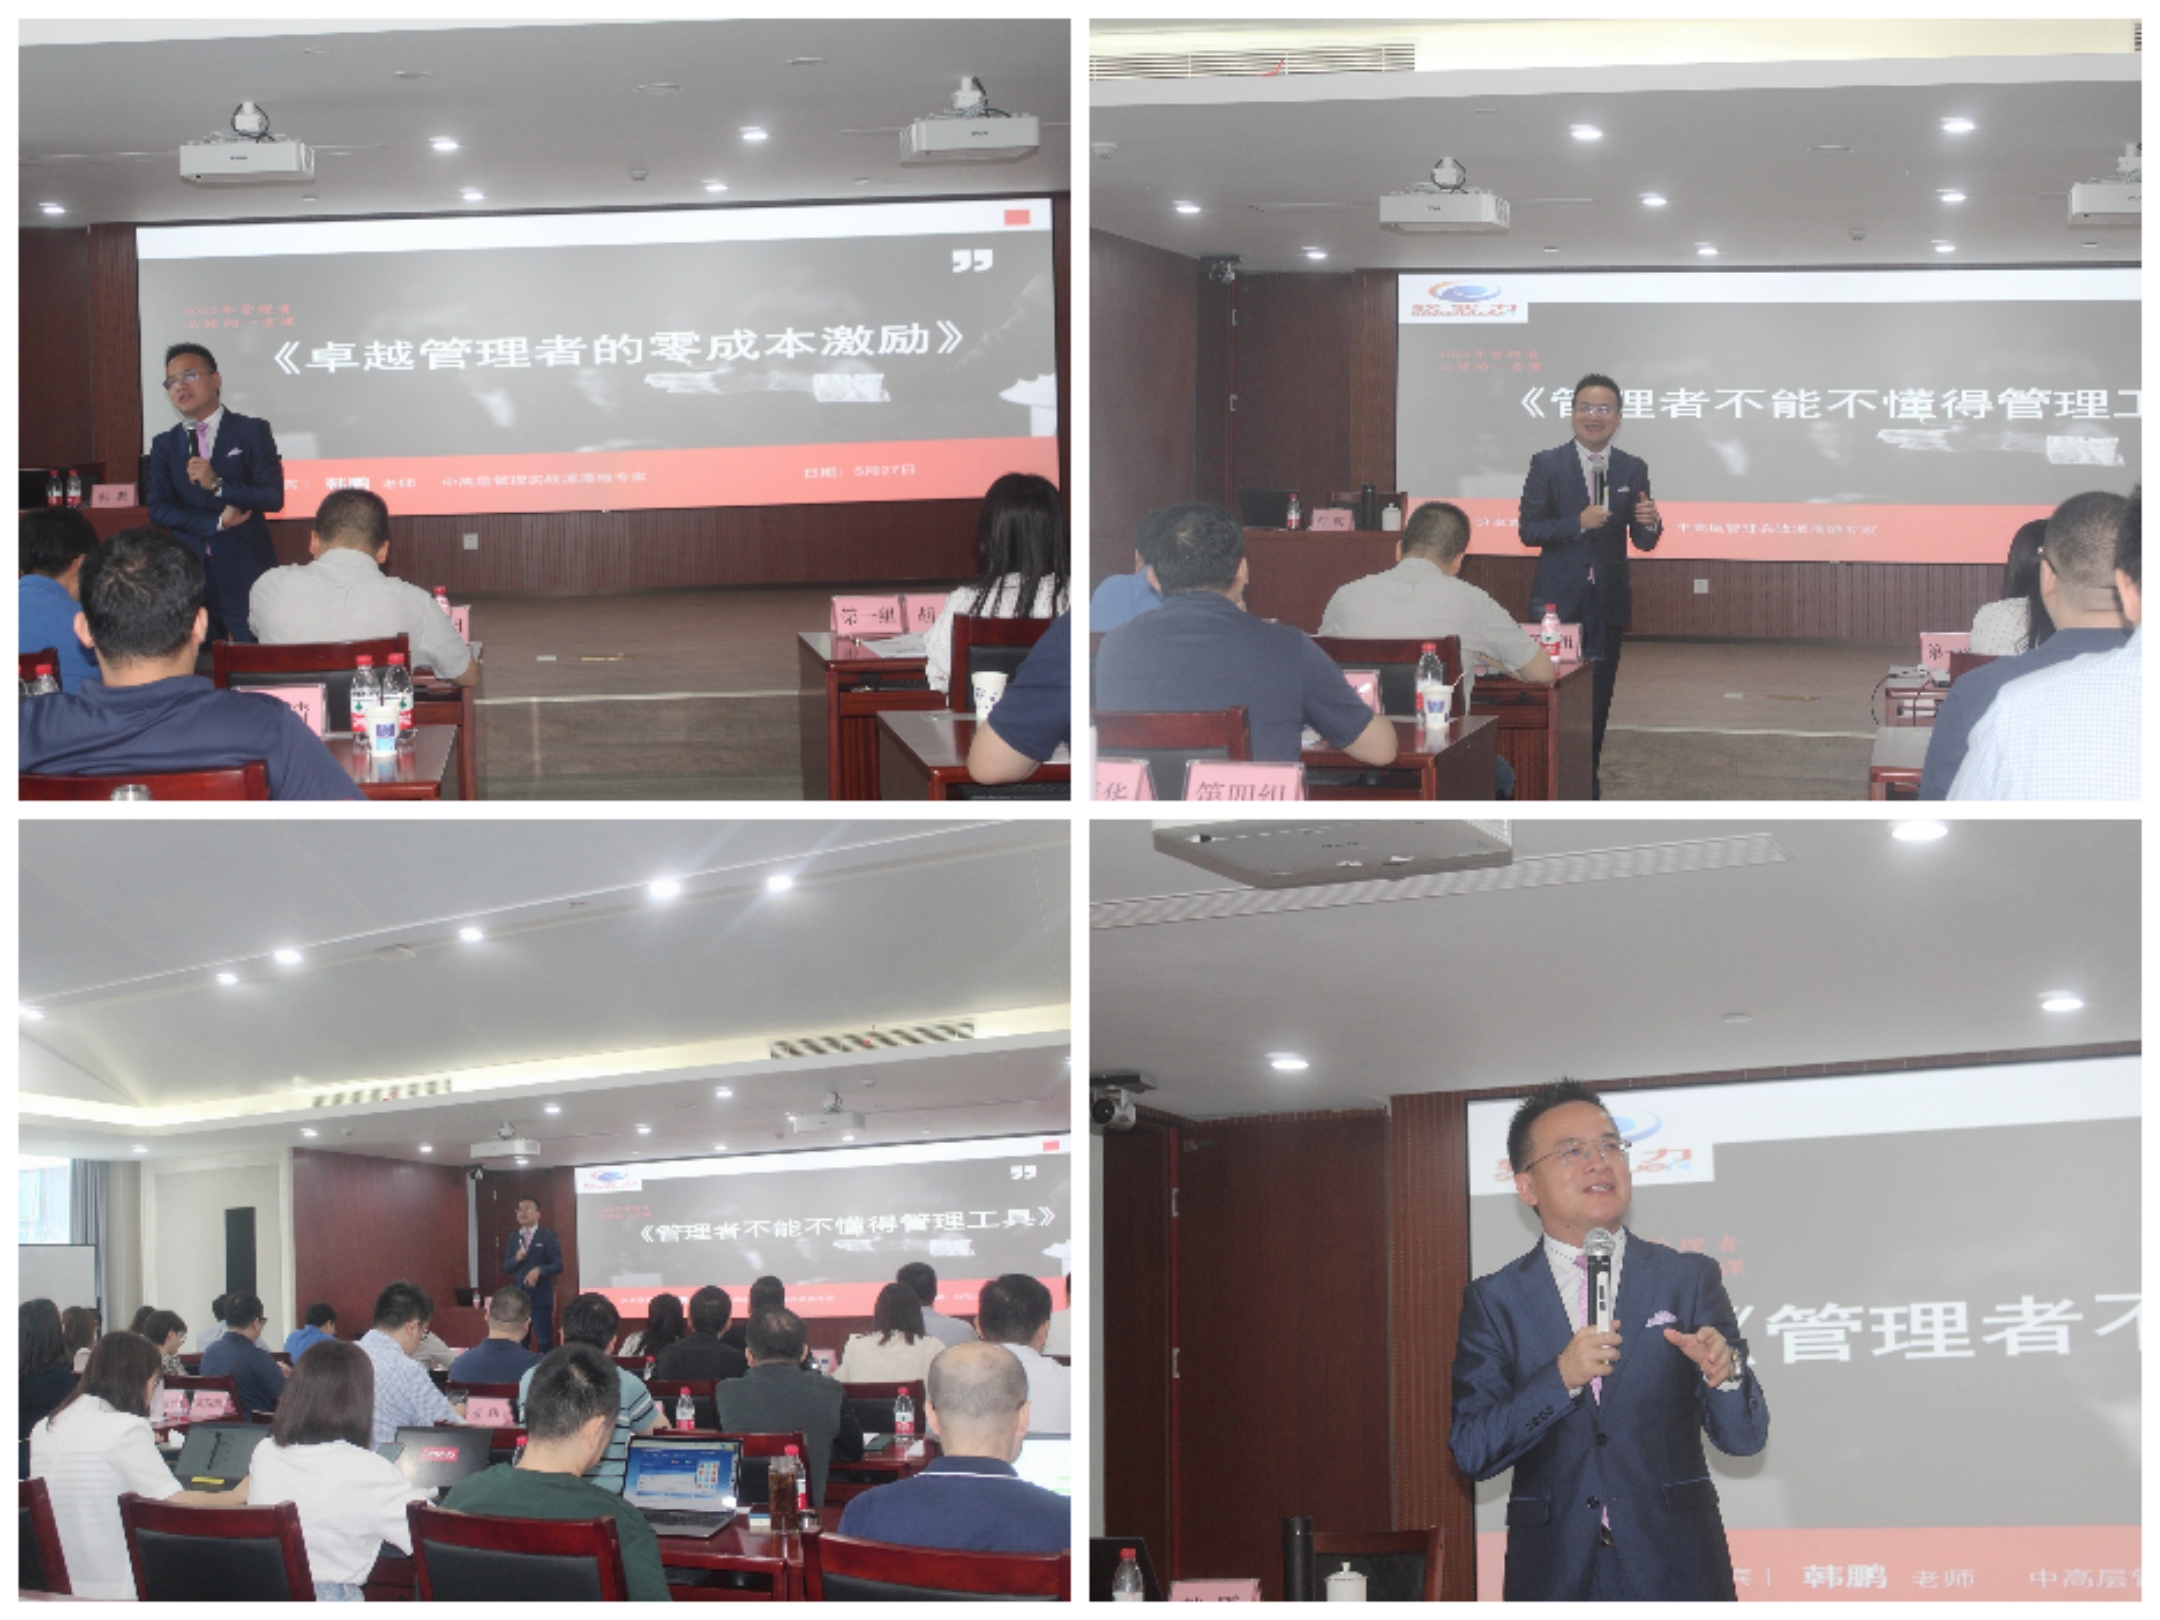 韩鹏老师2022年5月27给广西北投信创科技投资集团讲授《管理工具提升》课程